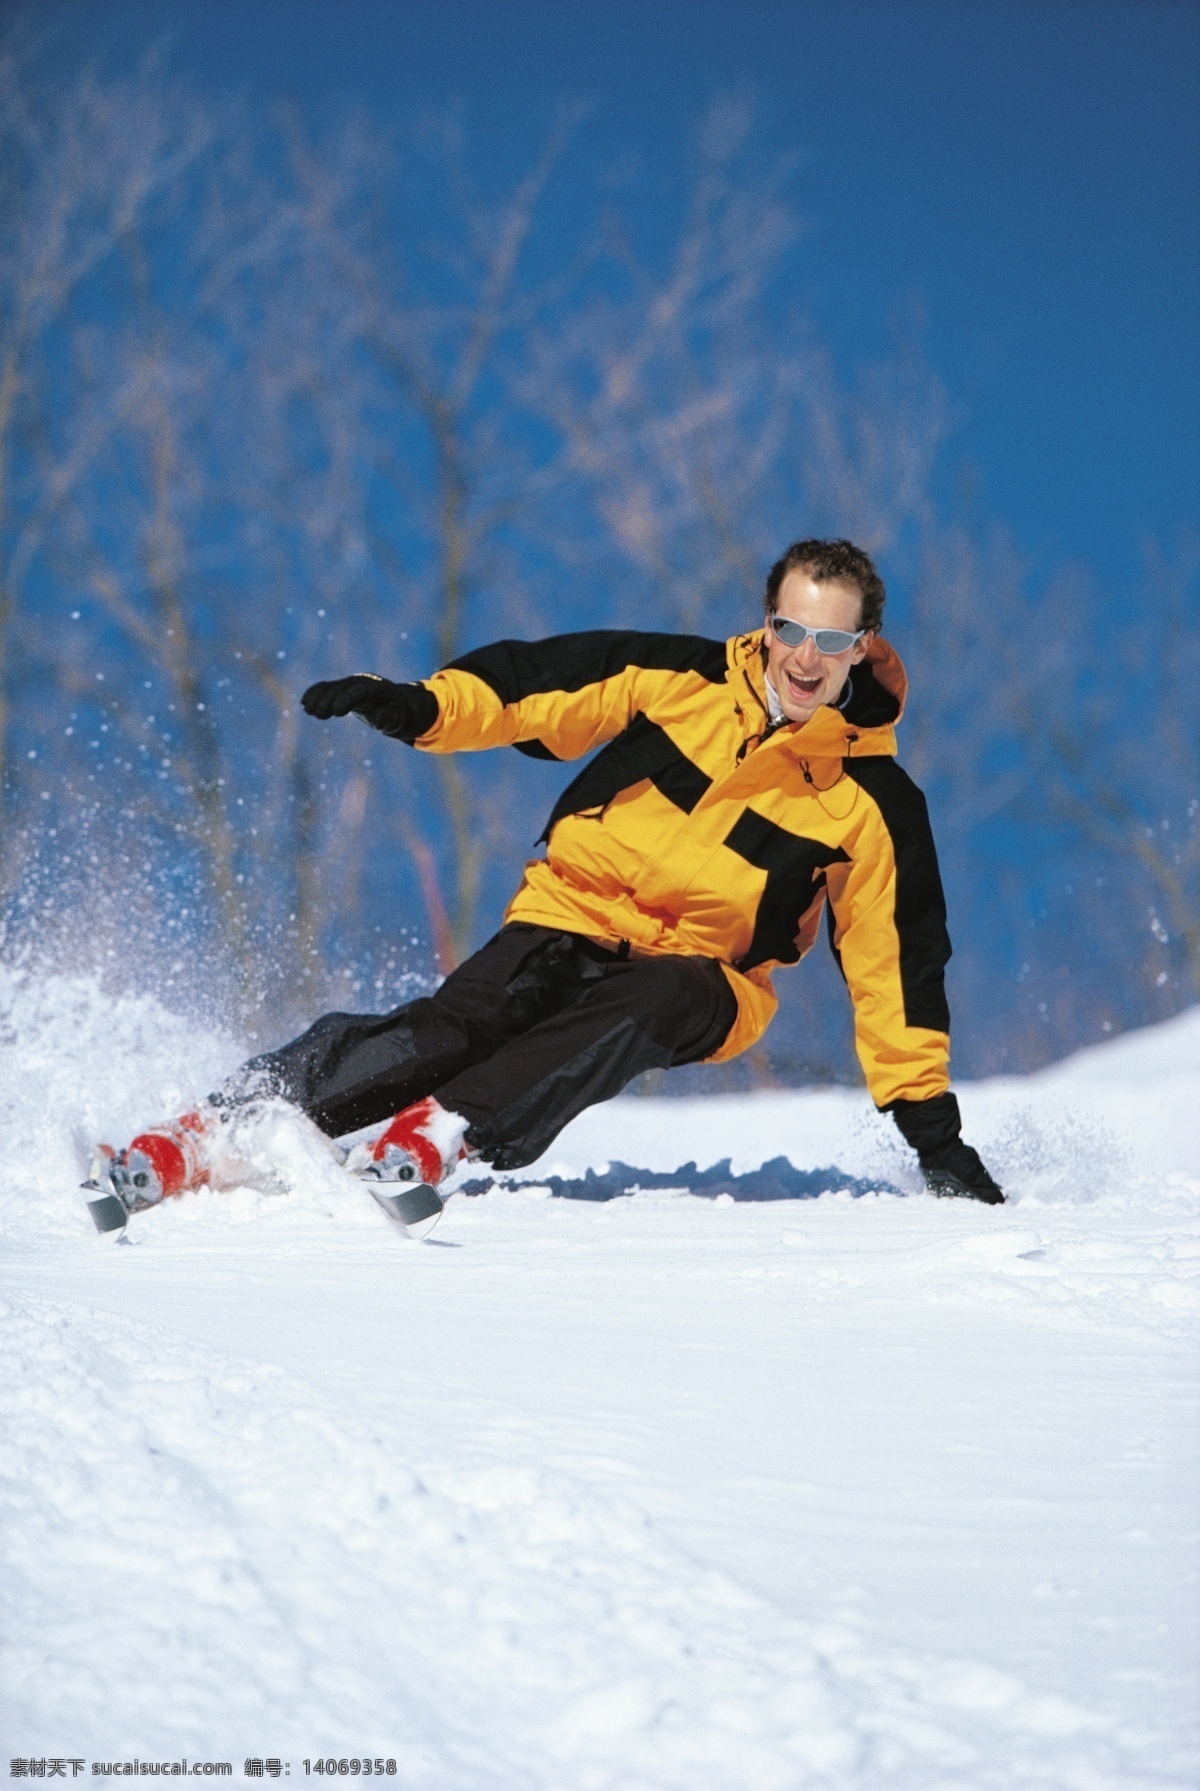 男性 滑雪 运动员 高清 冬天 雪地运动 划雪运动 极限运动 体育项目 男性运动员 下滑 速度 运动图片 生活百科 雪山 美丽 雪景 风景 摄影图片 高清图片 体育运动 白色